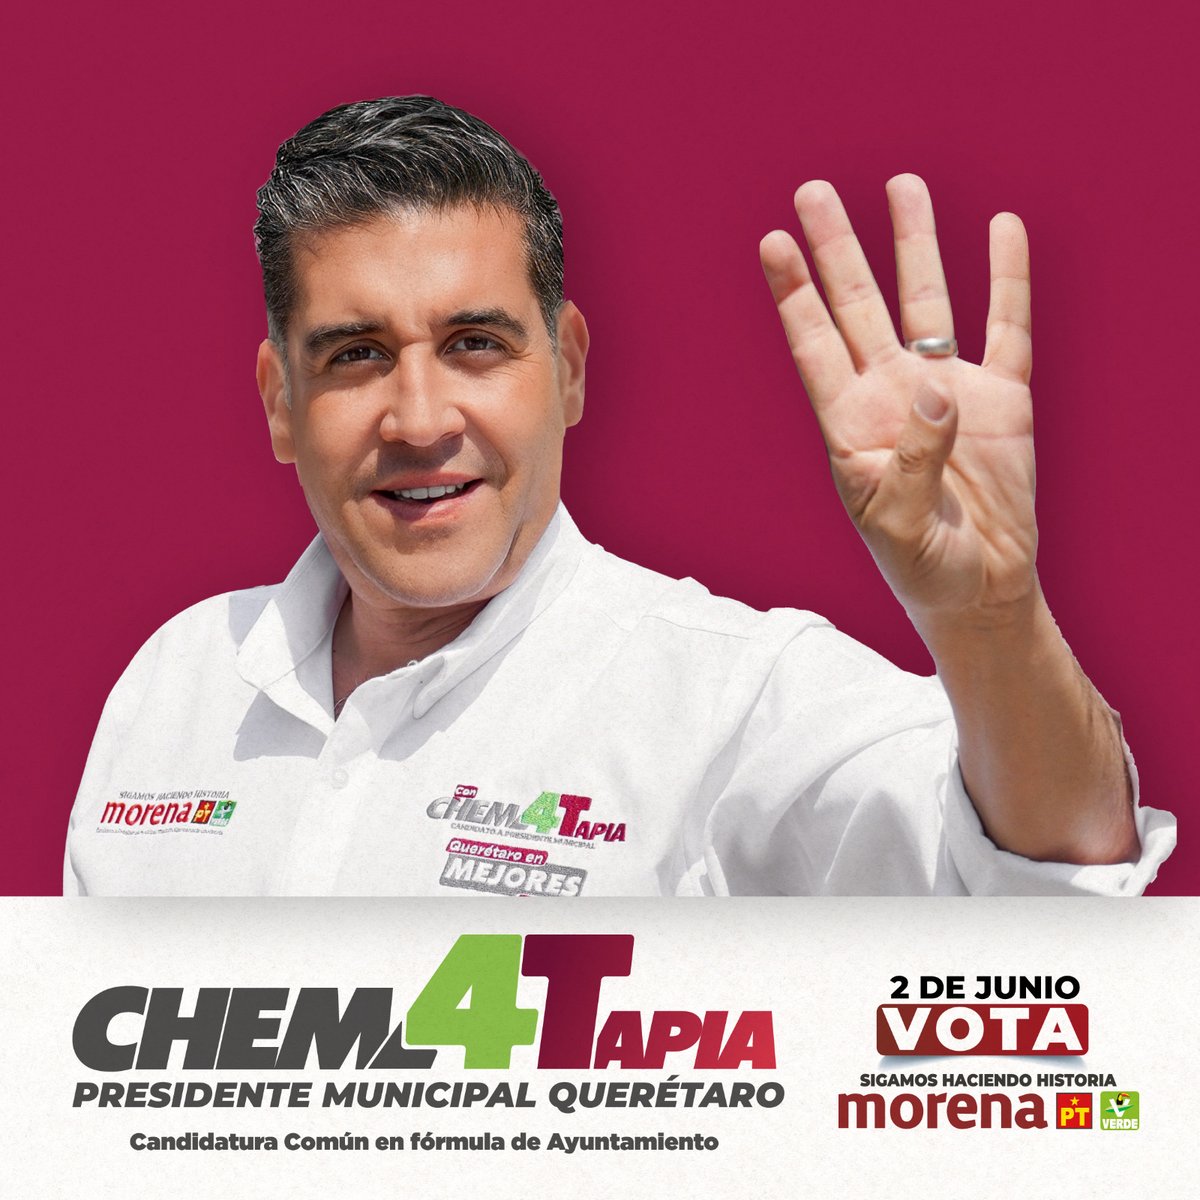 Tecnología, estrategia y voluntad serán nuestra herramientas para combatir a la delincuencia que hoy azota a Querétaro. Este 2 de junio, tu voto por Morena es un voto por la tranquilidad y la paz en nuestra ciudad. #ChemaPresidente #QuerétaroEnMejoresManos